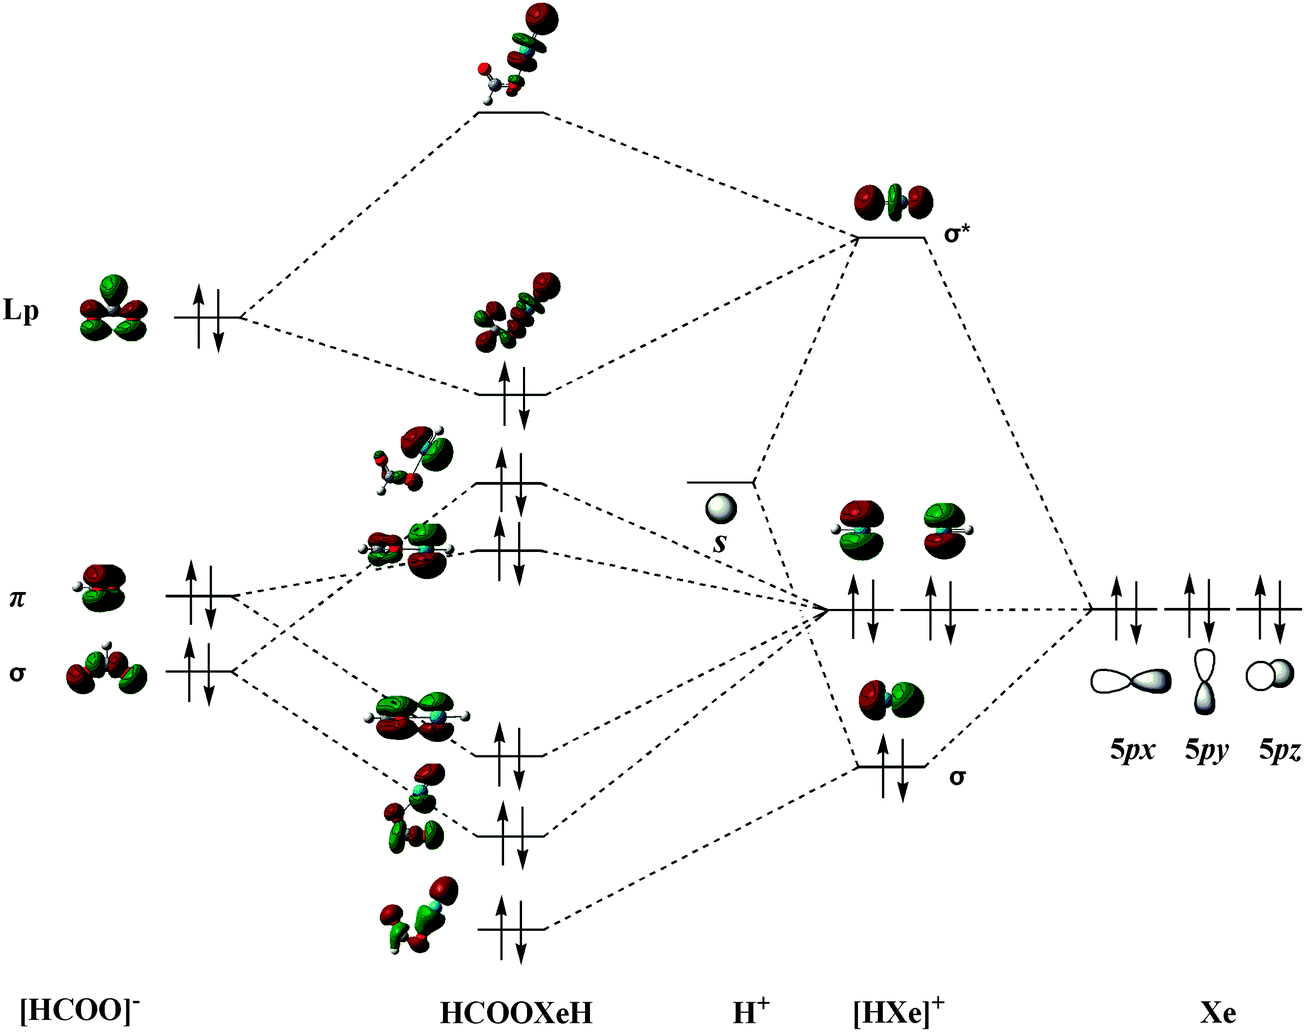 molecular orbital diagram ne2